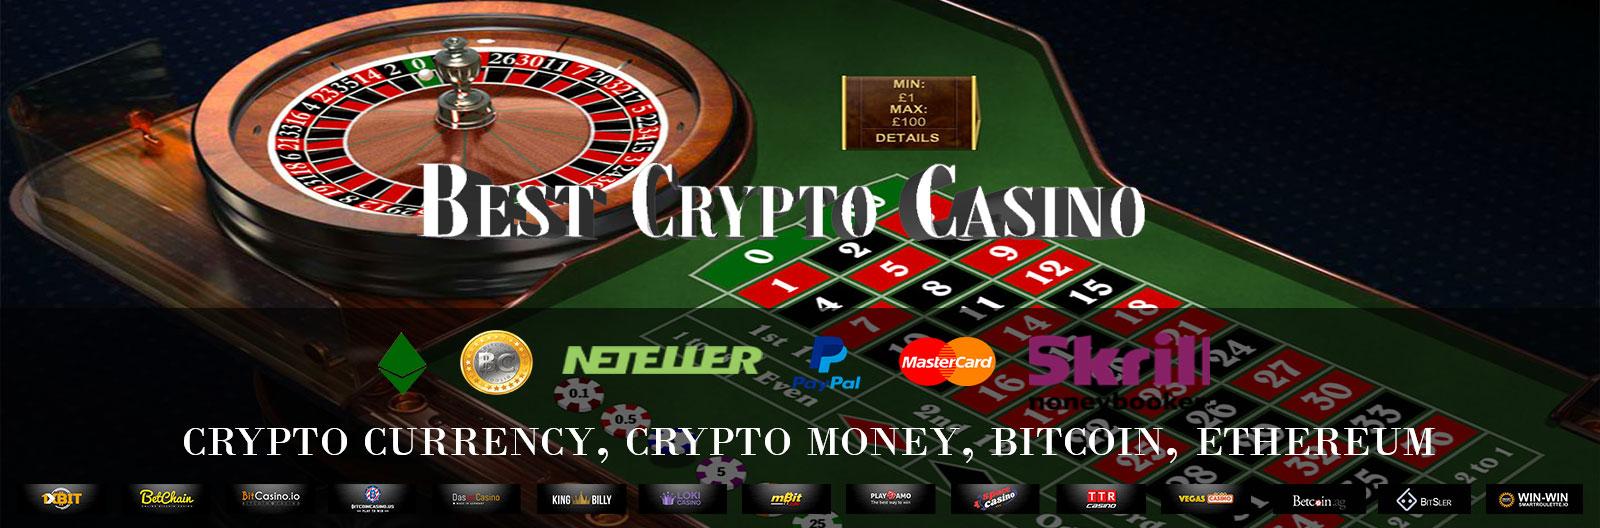 Superintendencia de bitcoin casinos reclamos